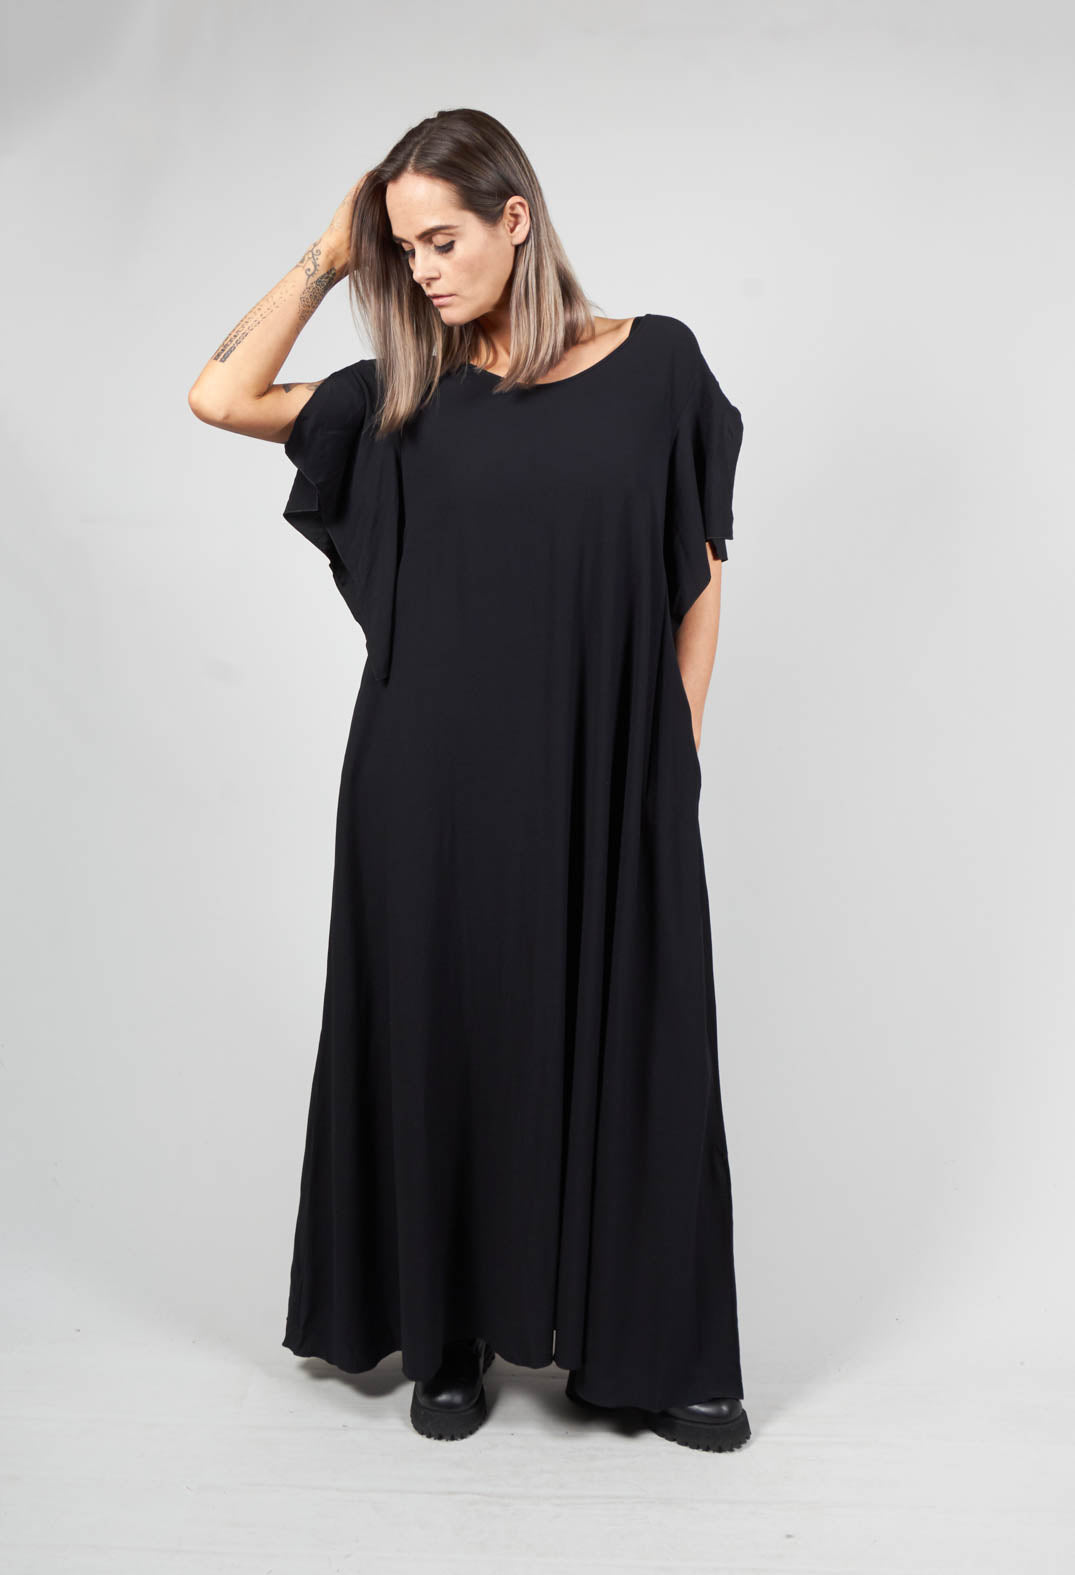 Piok Dress in Black